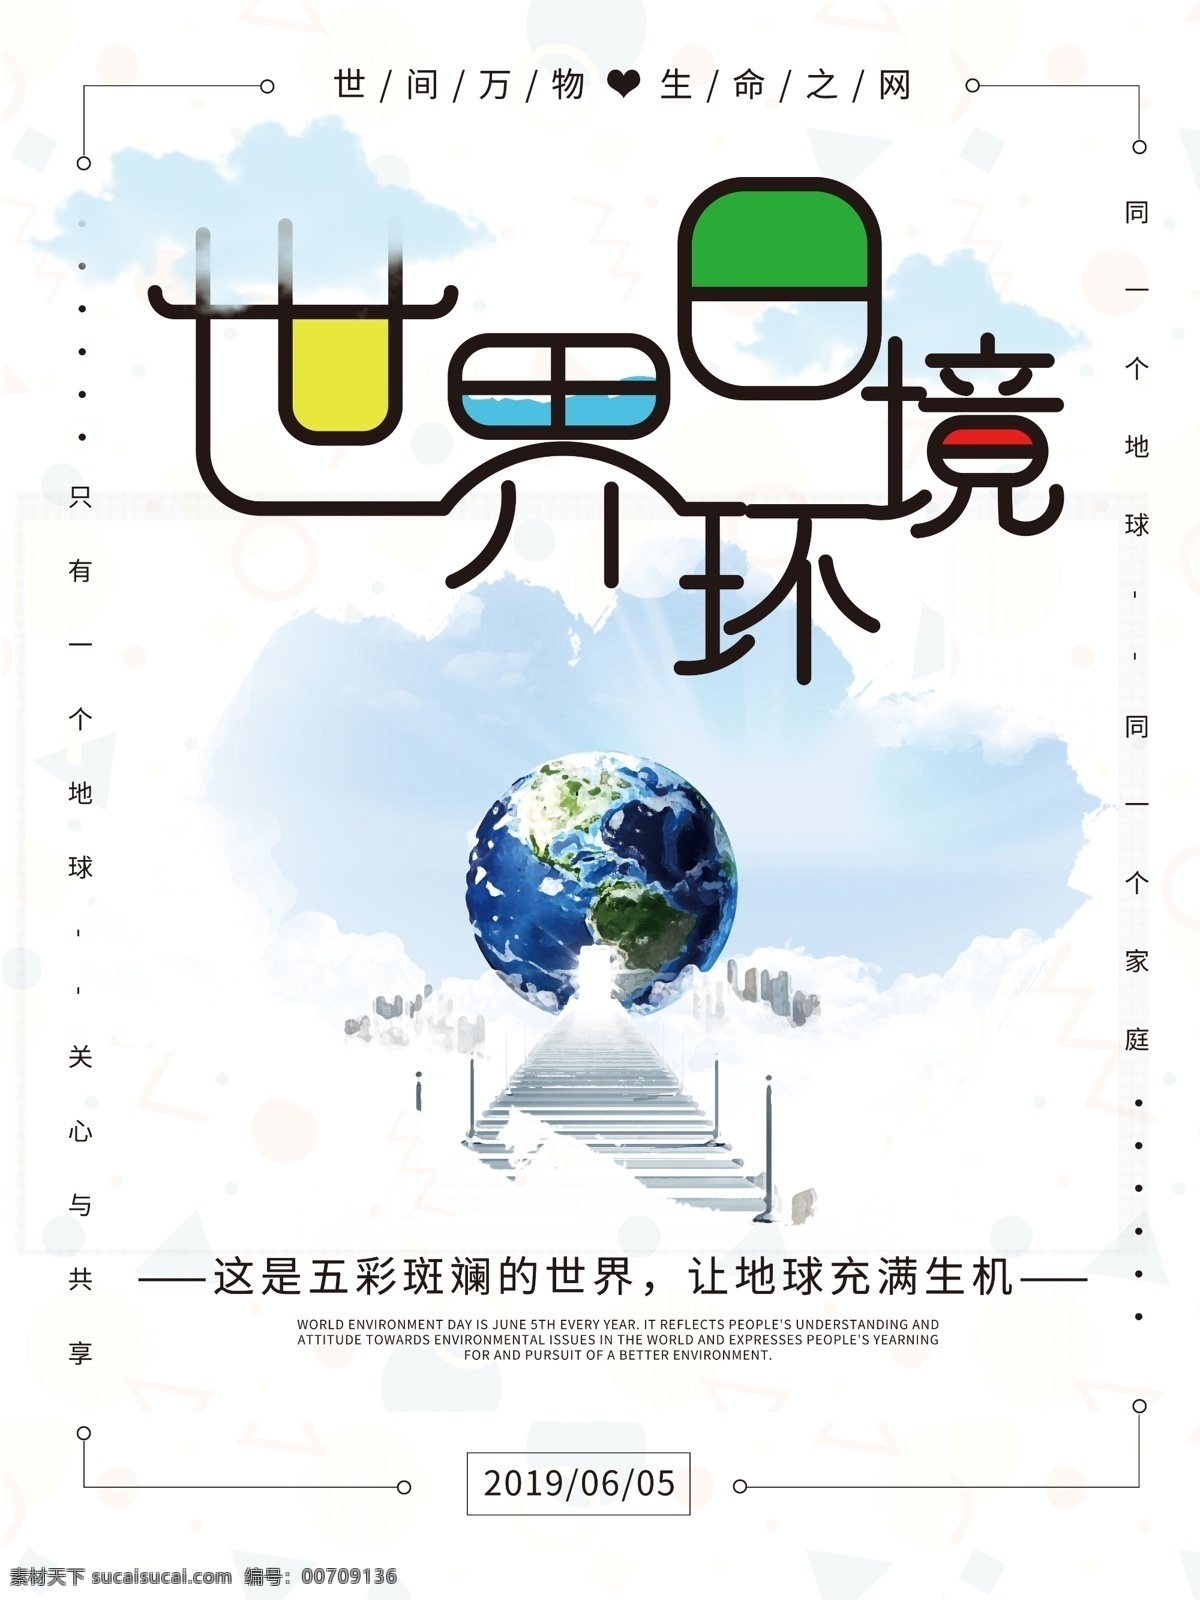 原创 小 清新 字体 保护 环境 世界环境日 海报 字体设计 世界 环境日 小清新 白色 蓝色 简约 地球 保护环境